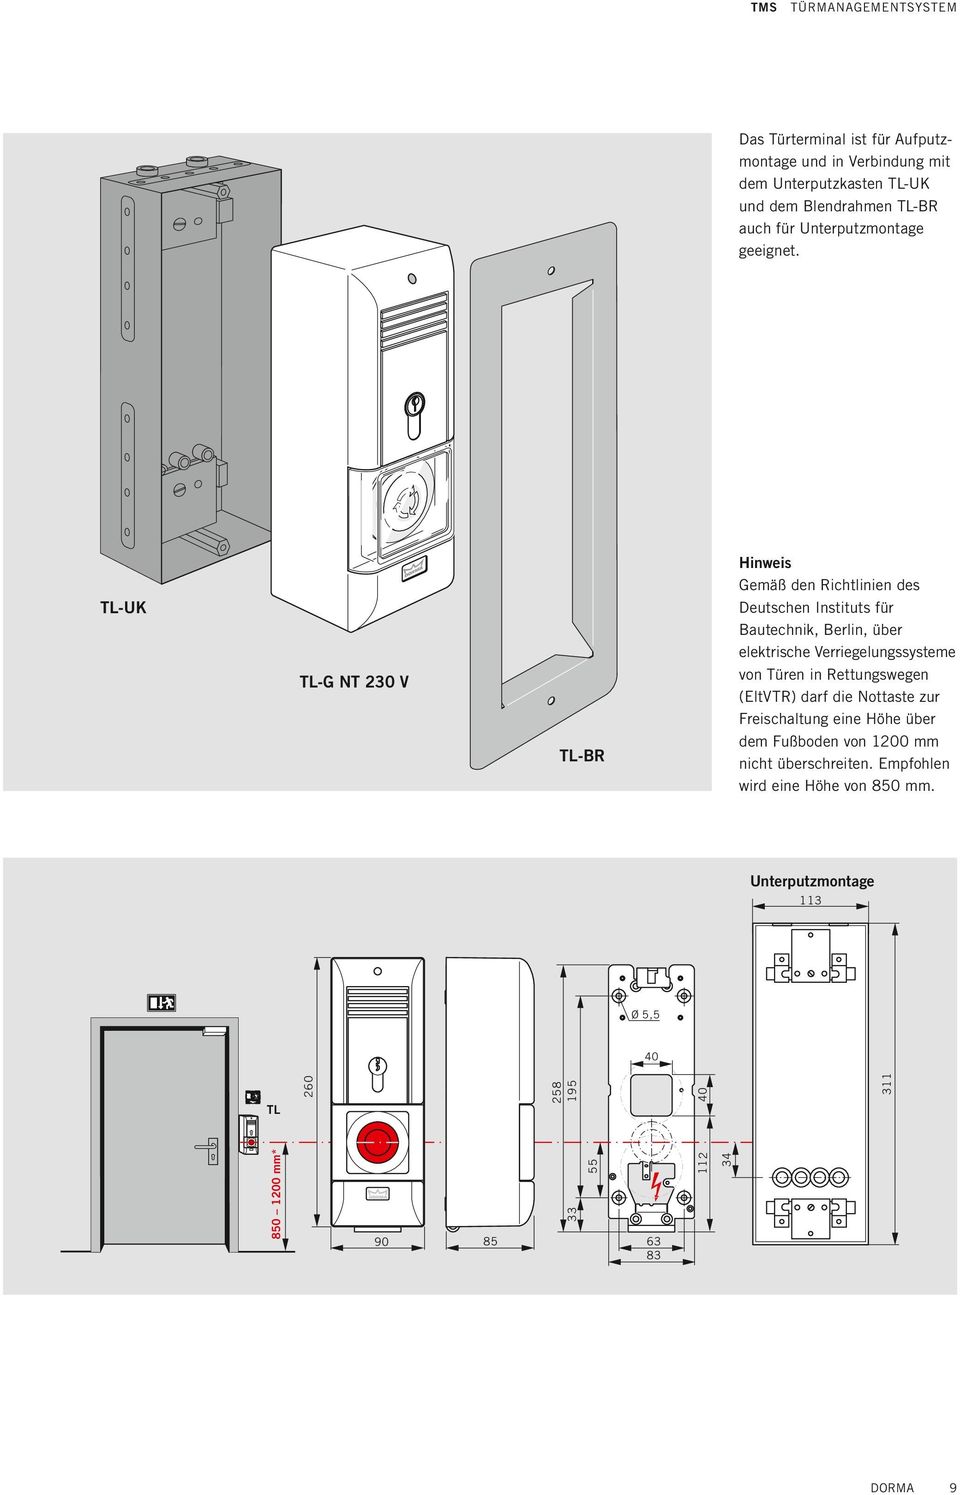 Hinweis Gemäß den Richtlinien des Deutschen Instituts für autechnik, erlin, über elektrische Verriegelungssysteme von Türen in